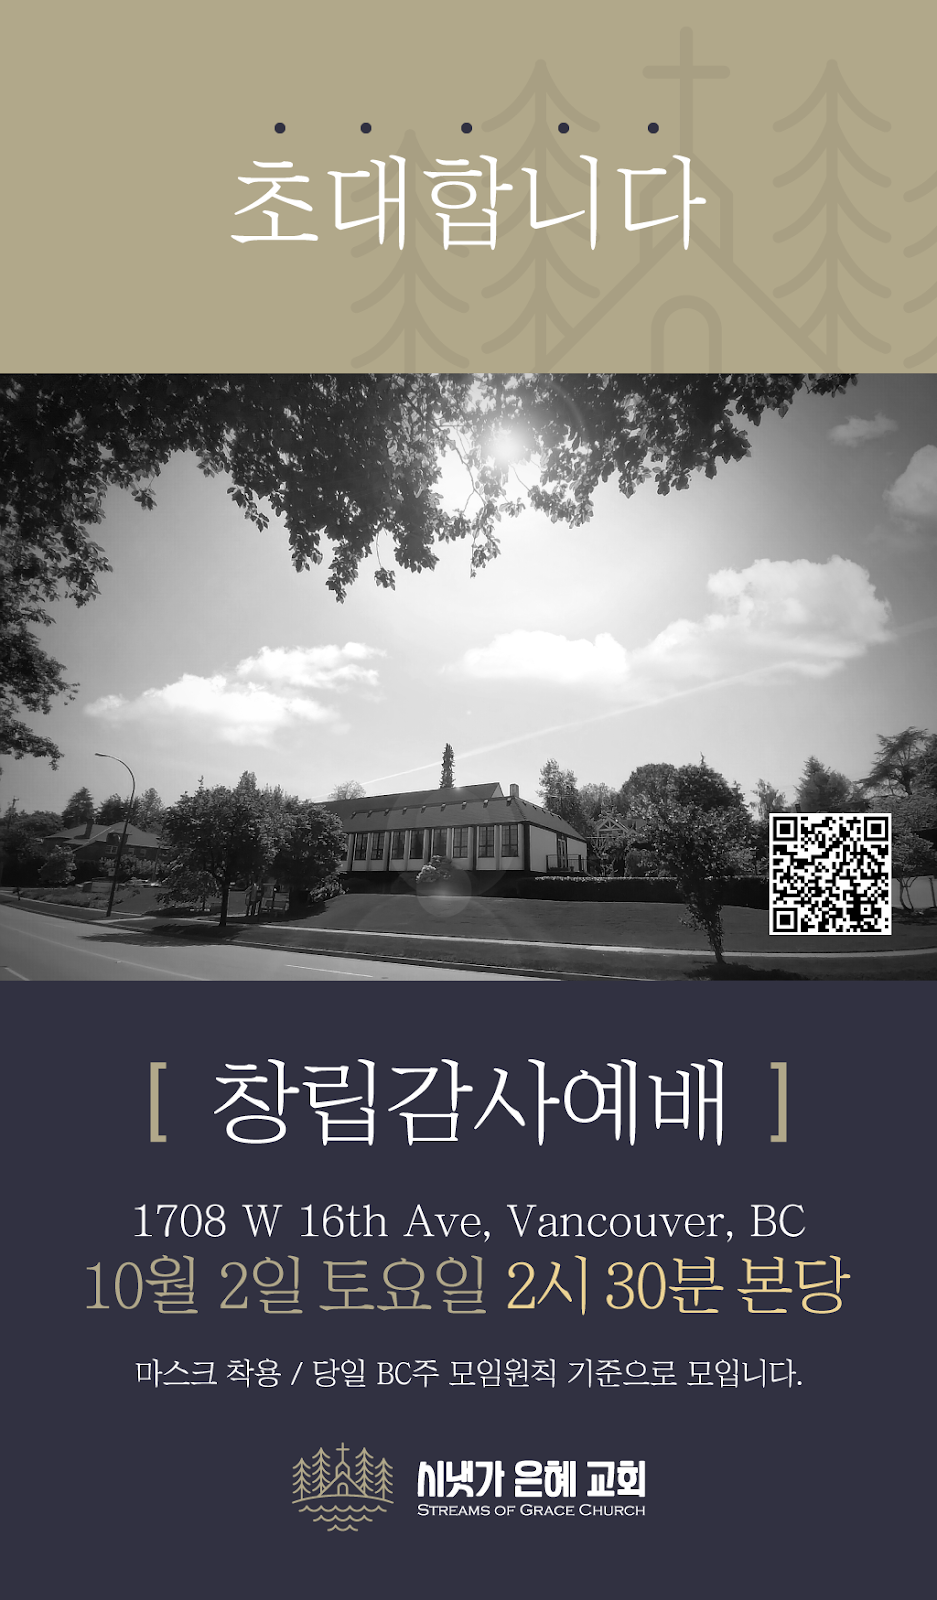 시냇가 은혜 교회 (Streams of Grace Church) | 1708 W 16th Ave, Vancouver, BC V6J 2M1, Canada | Phone: (604) 837-1769